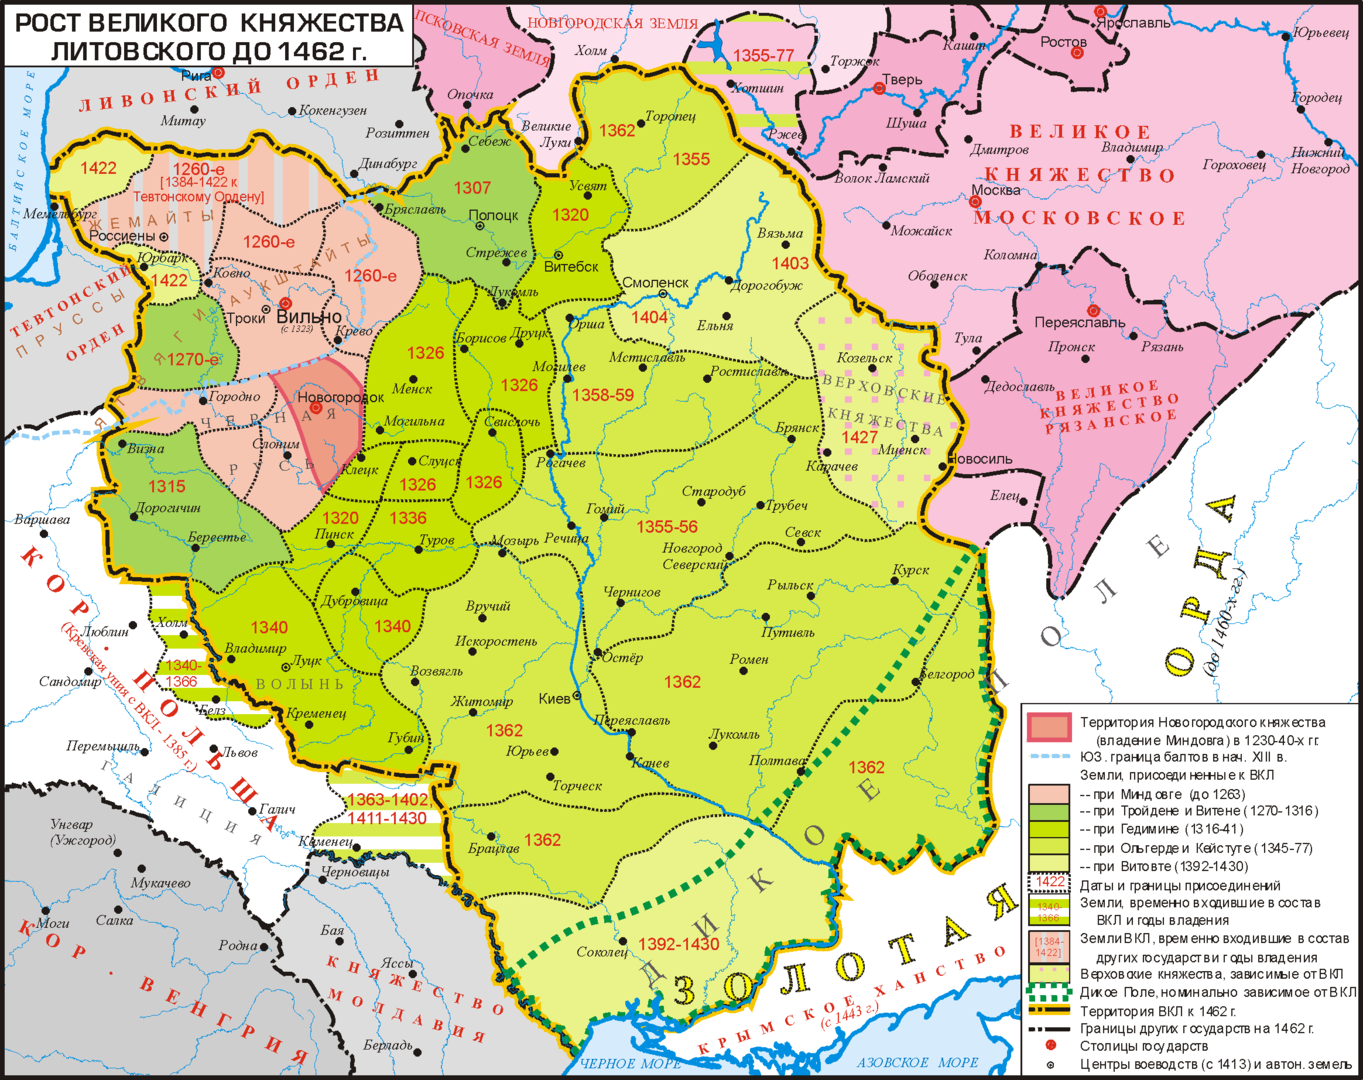 Рост Великого Княжества Литовского до 1462 года. Изображение: Koryakov Yuri, CC BY-SA 2.5, commons.wikimedia.org